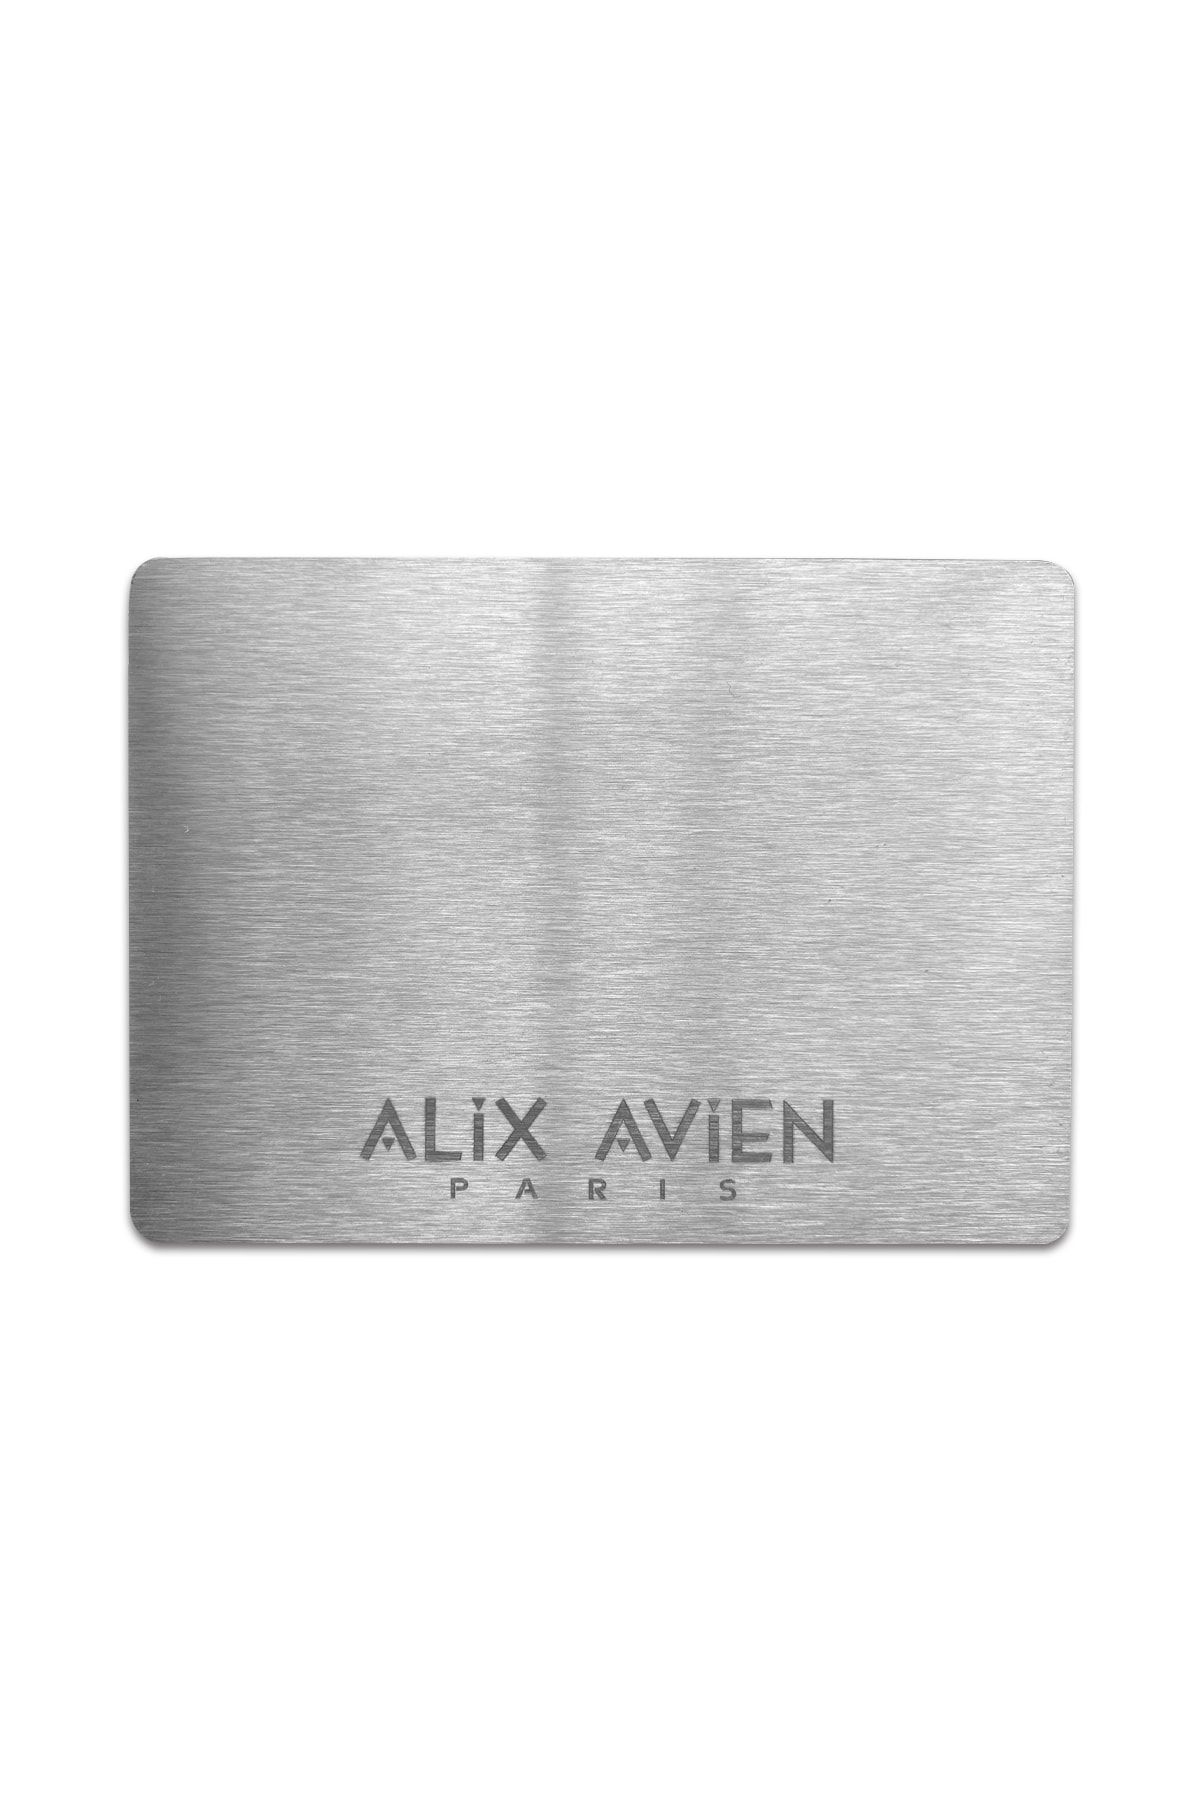 Alix Avien Ürün Karıştırma Paleti- Color Mixing Palette